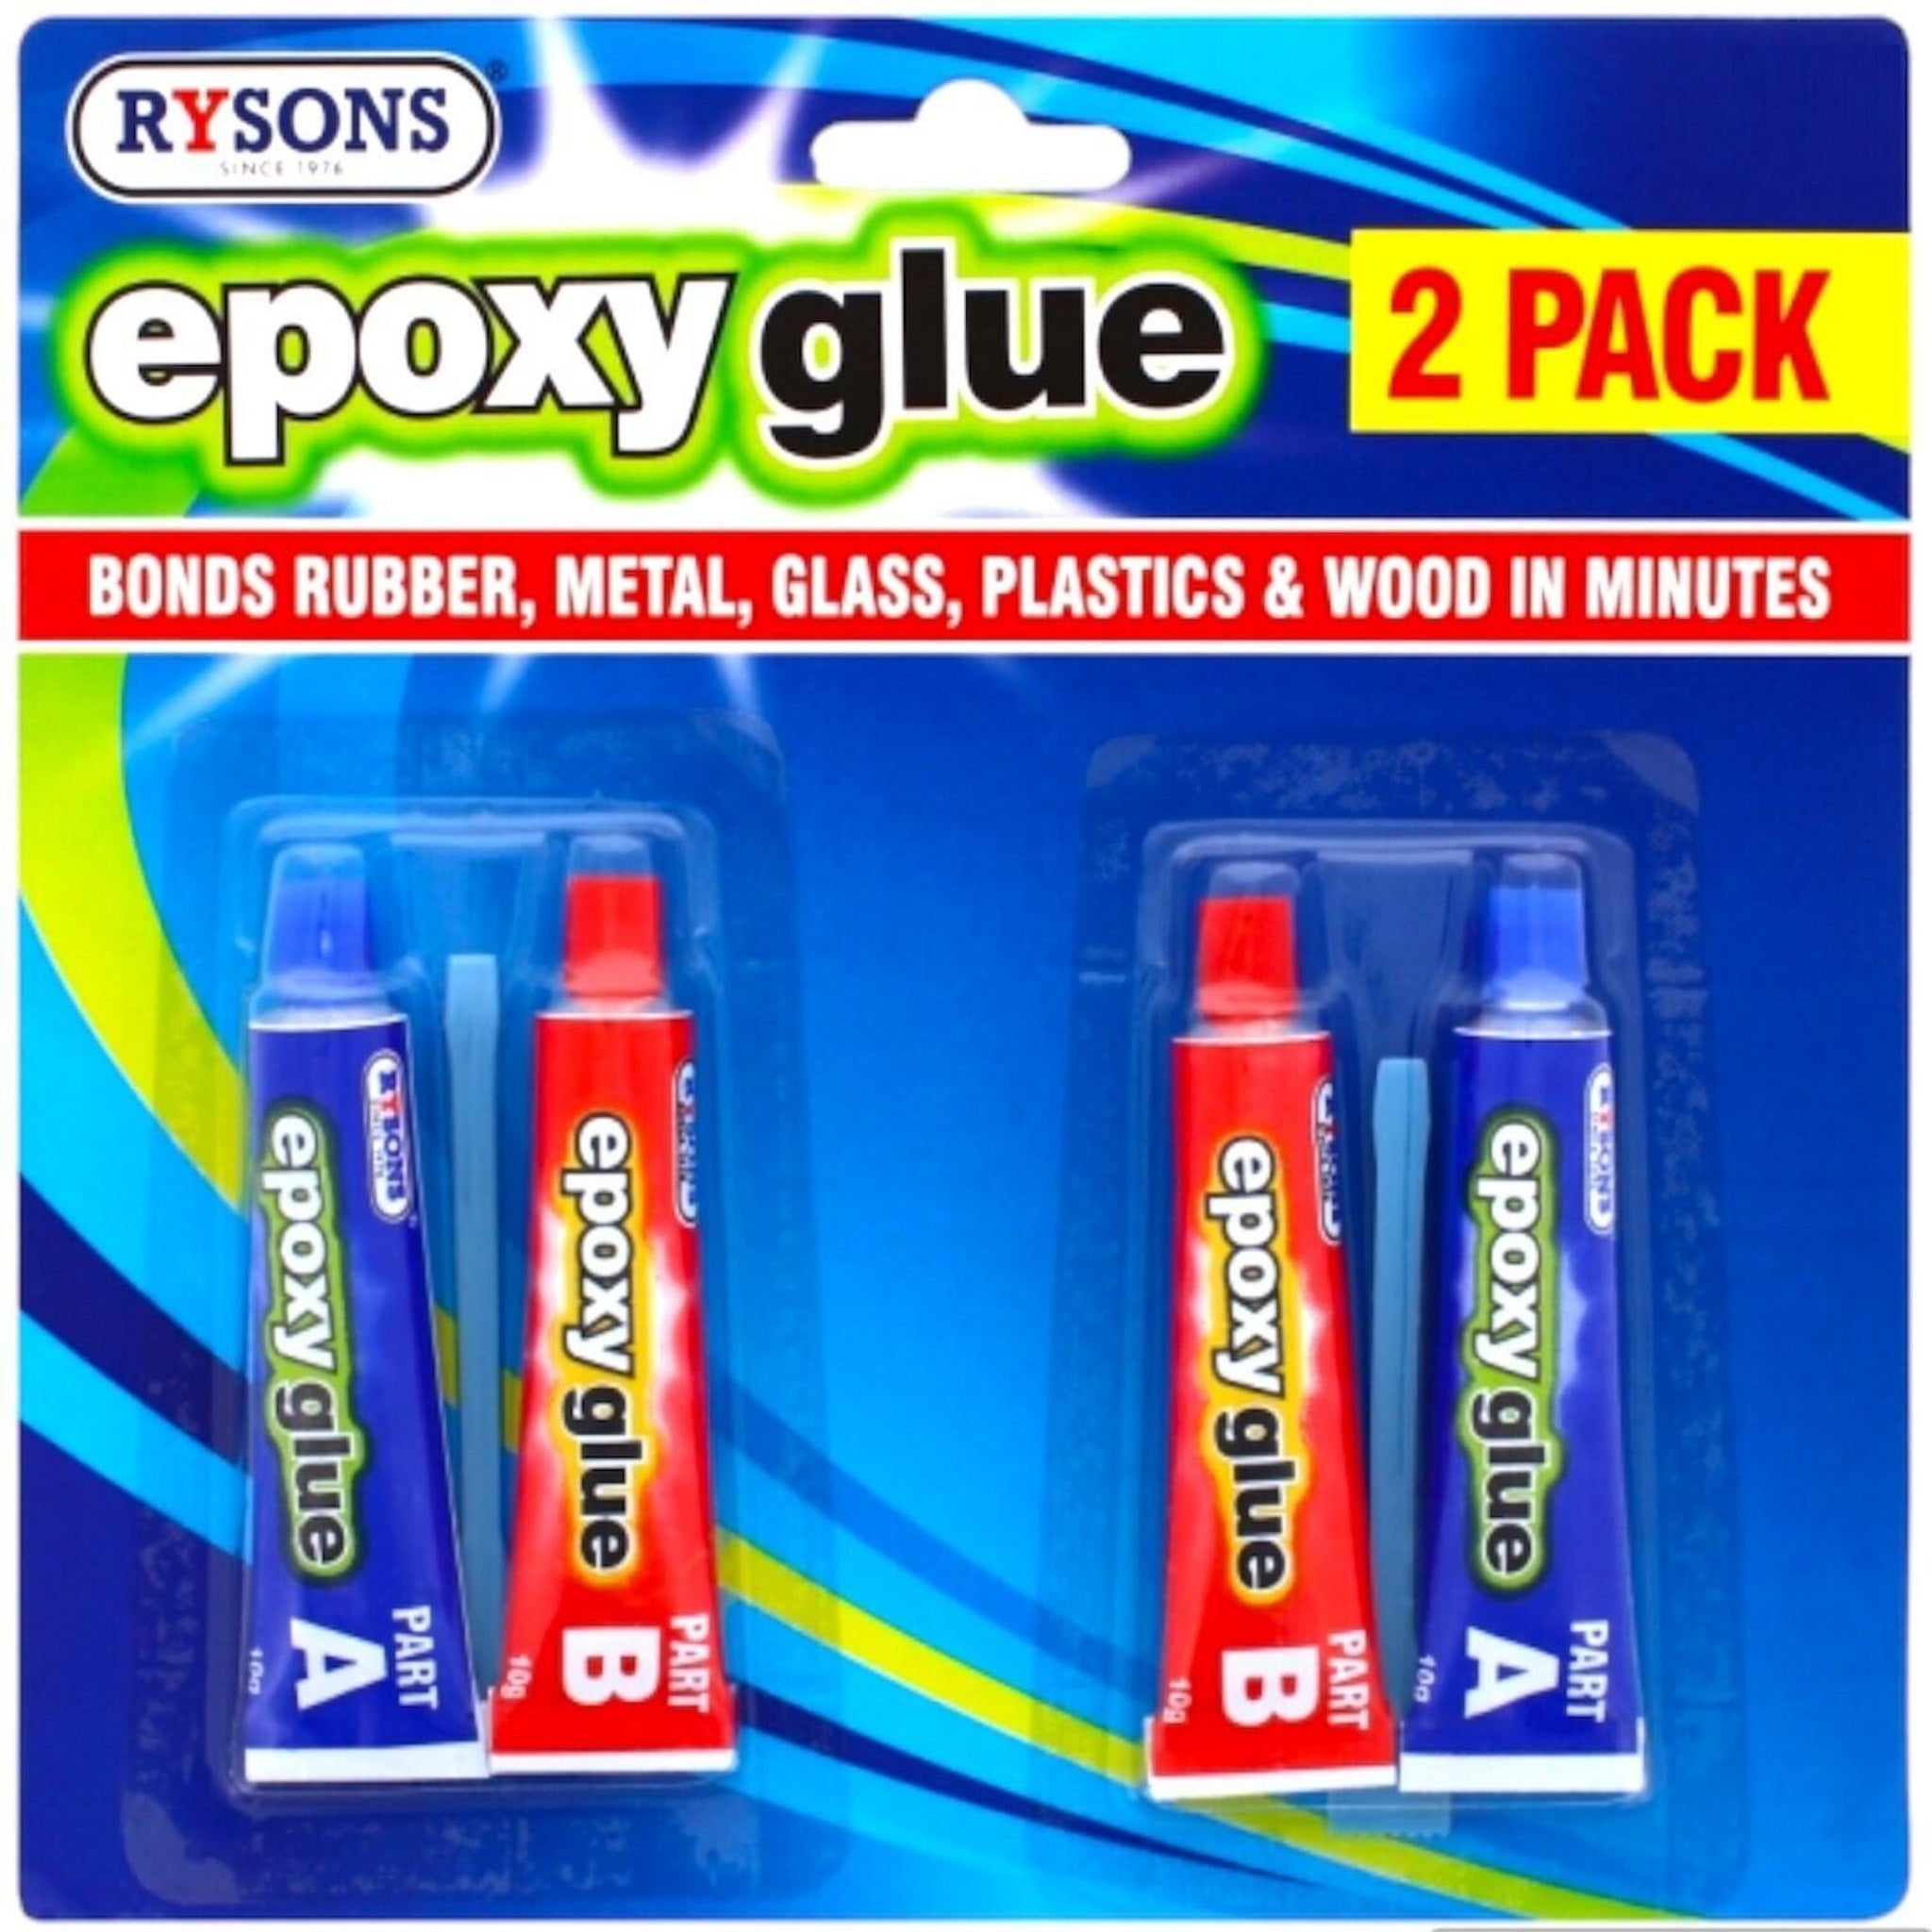 4 Pack Epoxy Hardener & Resin Glue Kit for Glass Metal Plastics Wood Rubber